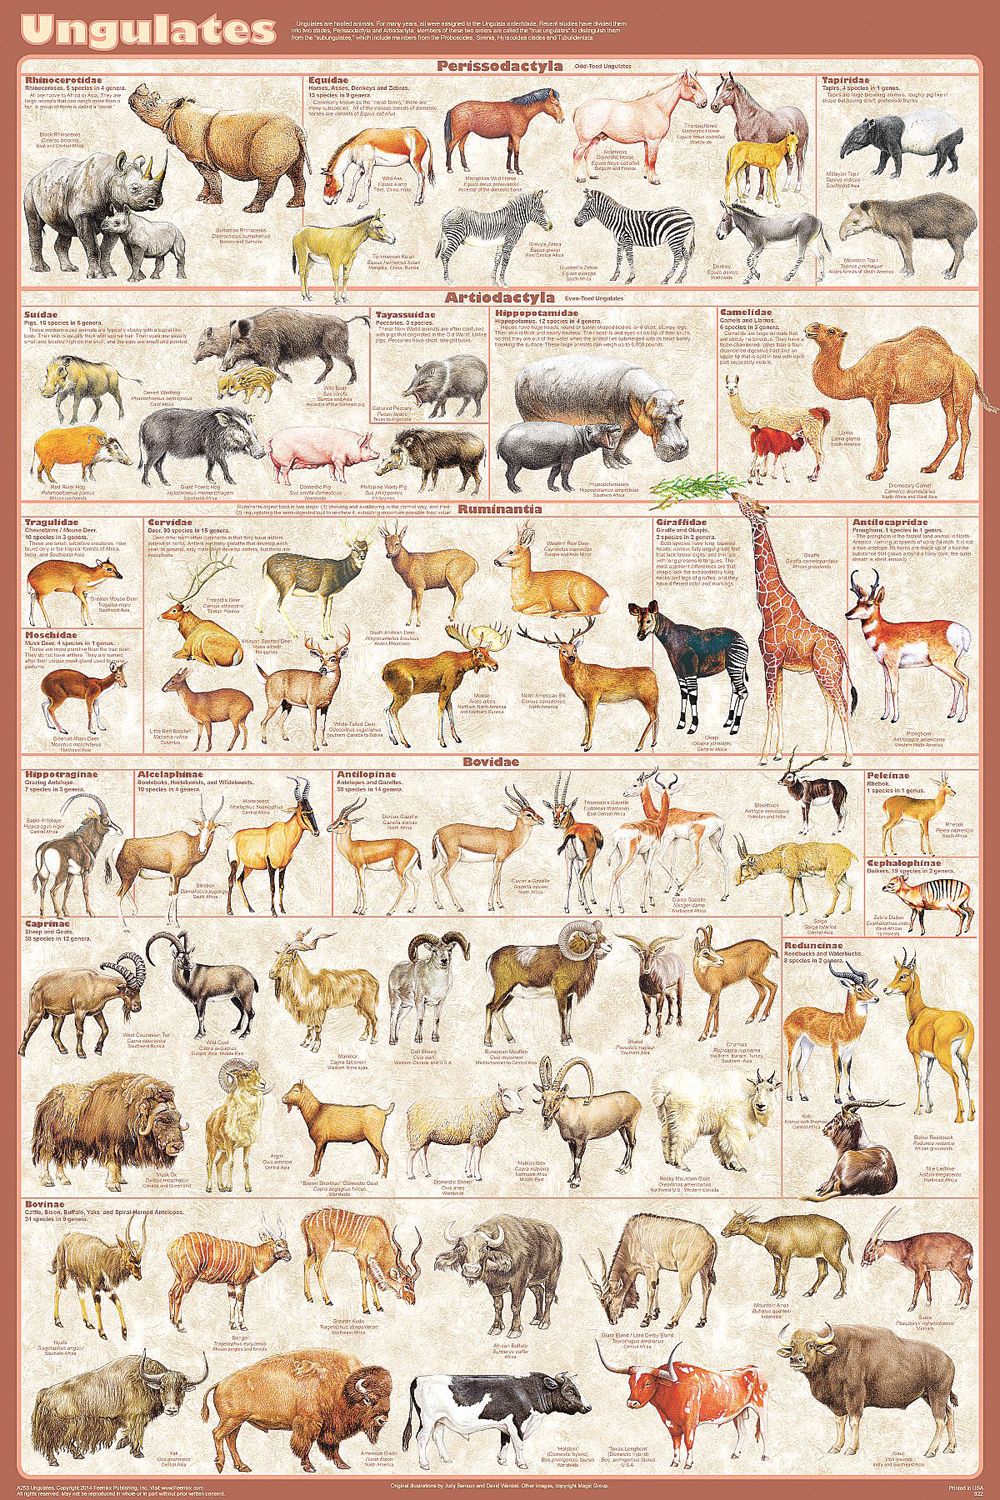 III. Major Families of Hoofed Mammals